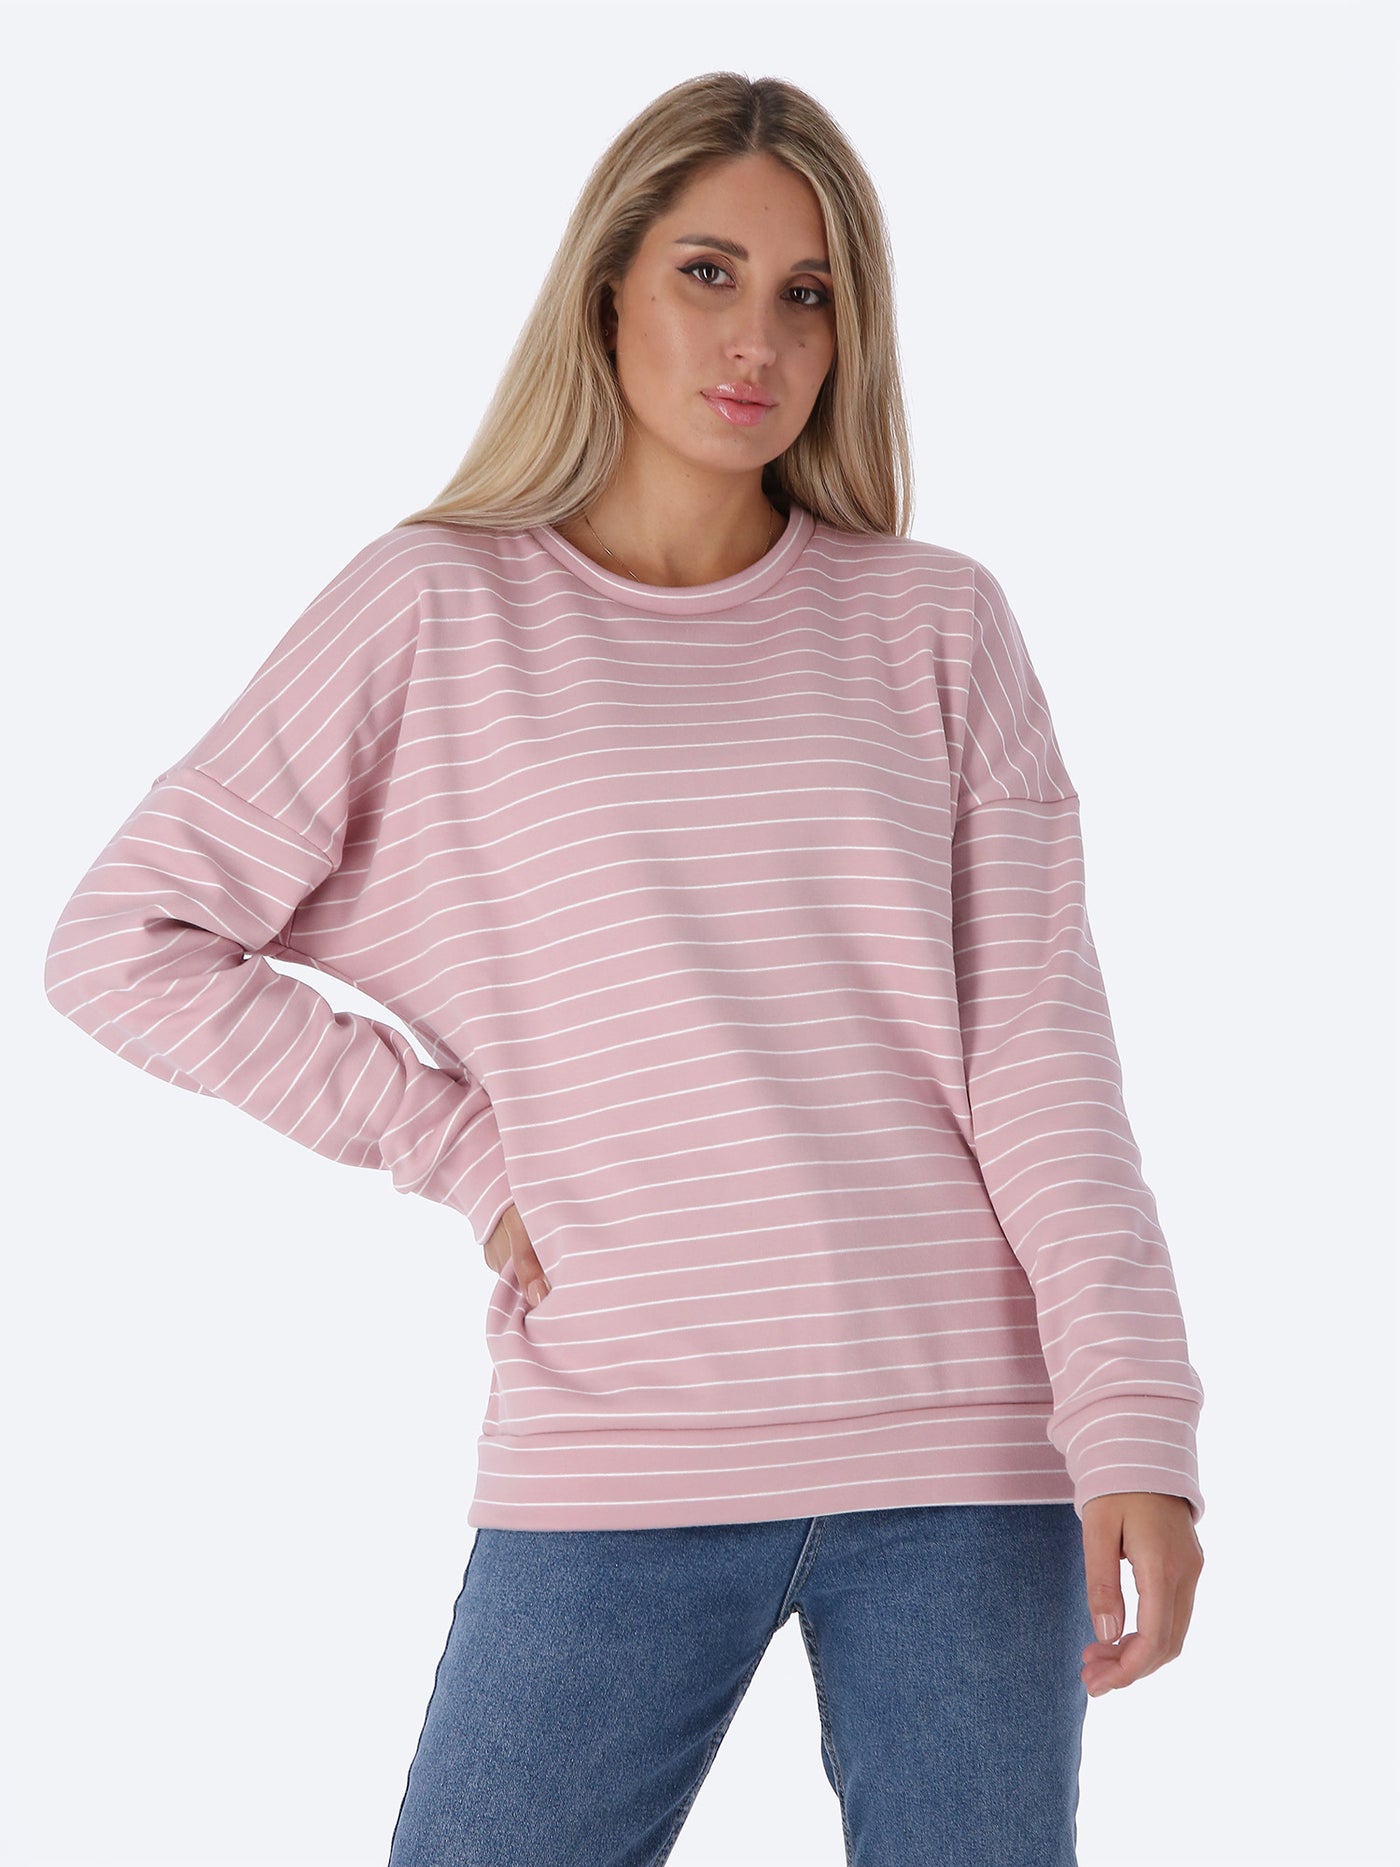 Sweatshirt - Striped - Round Neck